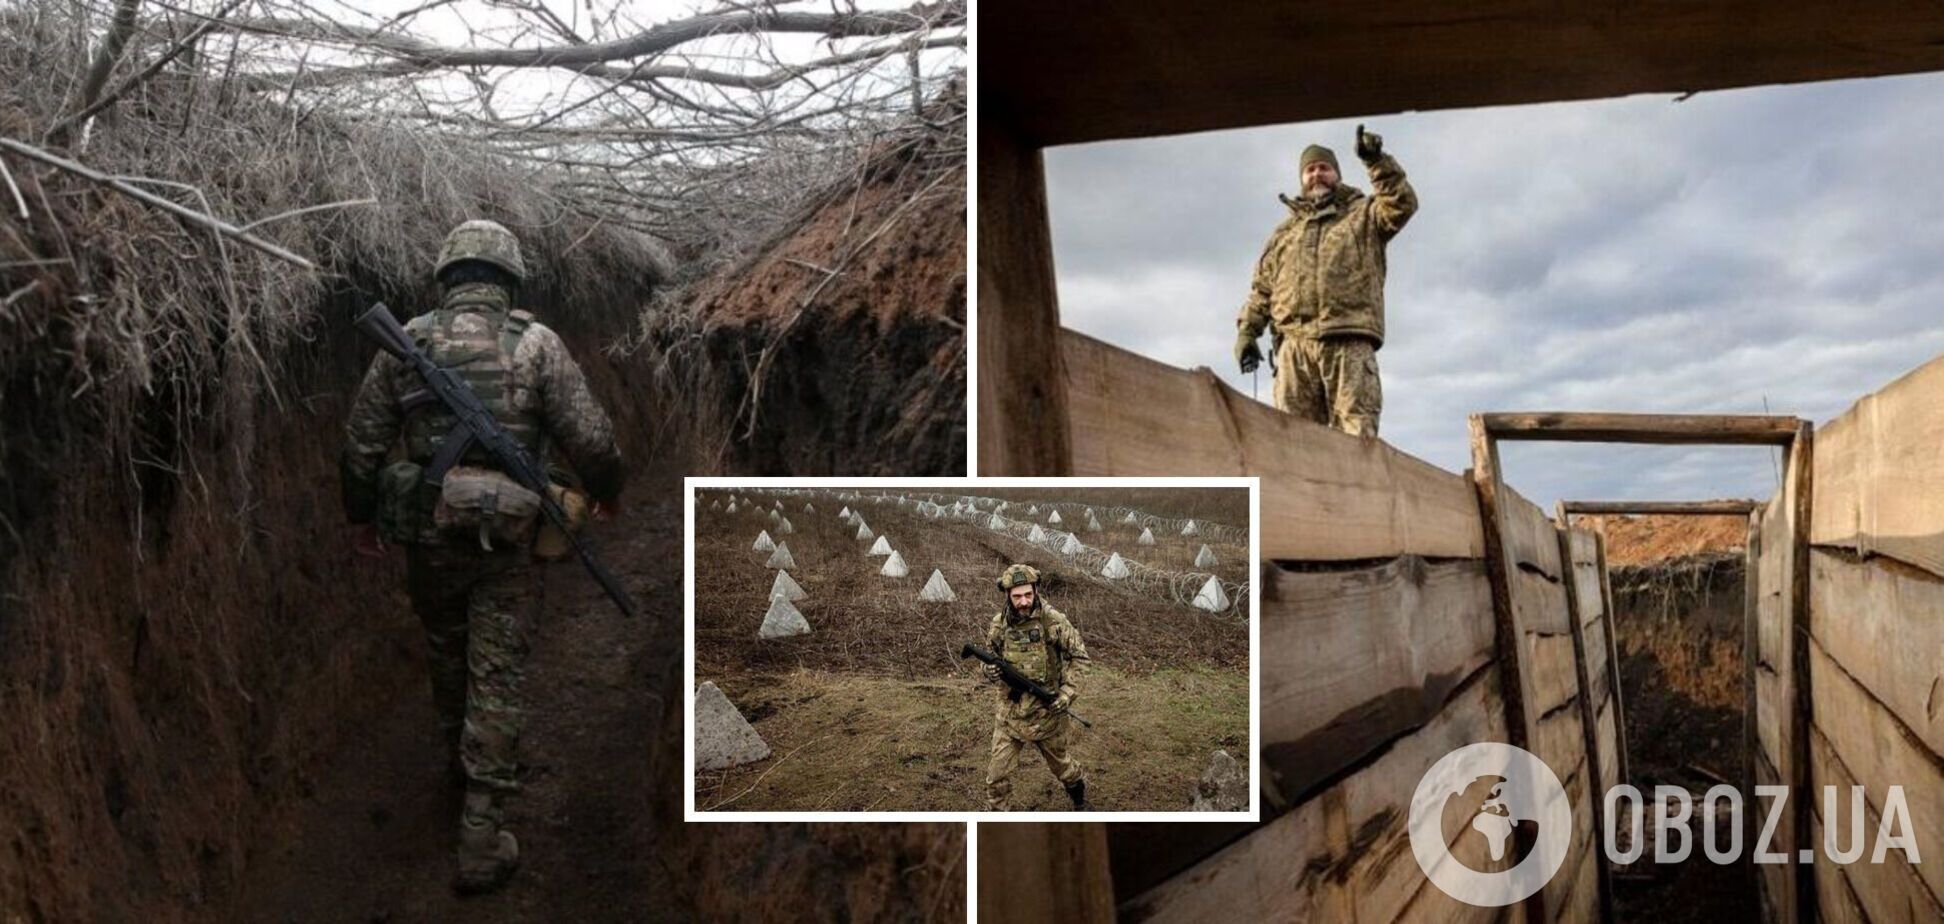 'Не 'Гра престолів': у ЗСУ висловилися про українські укріплення

